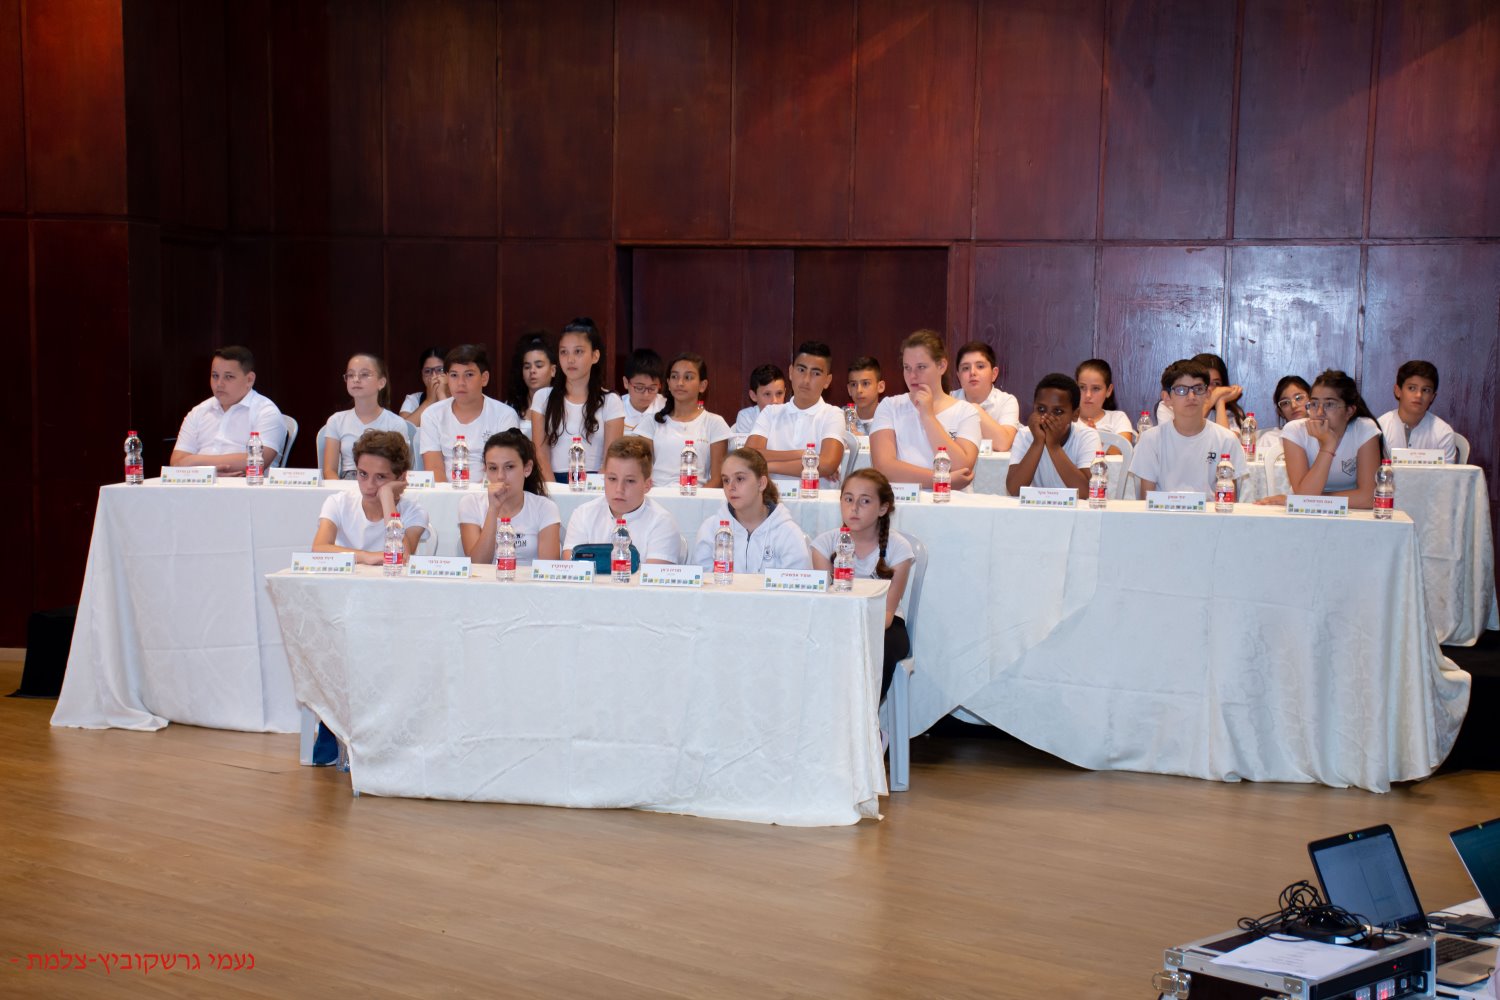 המשתתפים בחידון התנ"ך העירוני | צילום: באדיבות נעמי גרשוביץ'